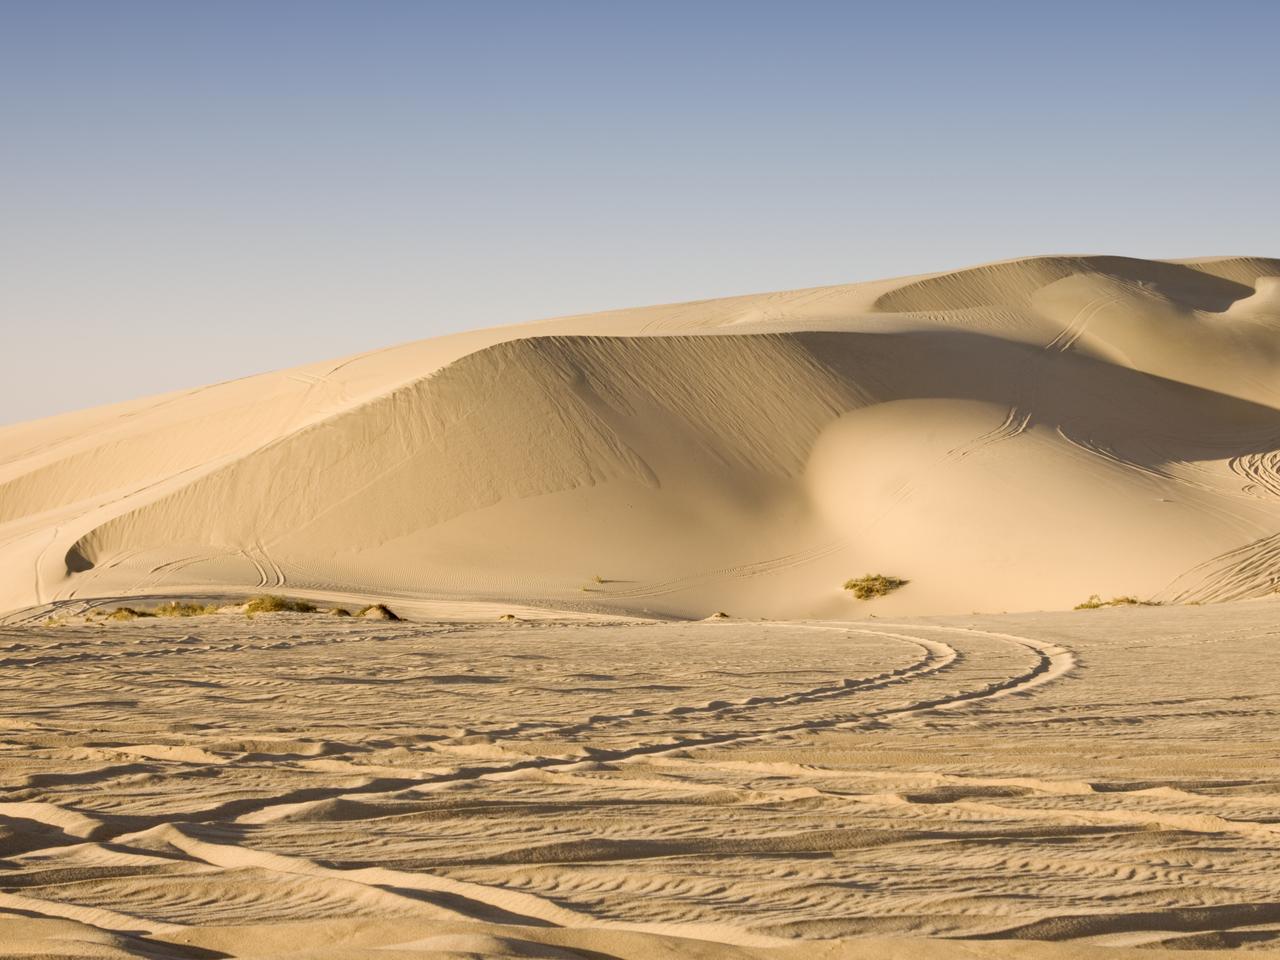 Sealine desert in Qatar.